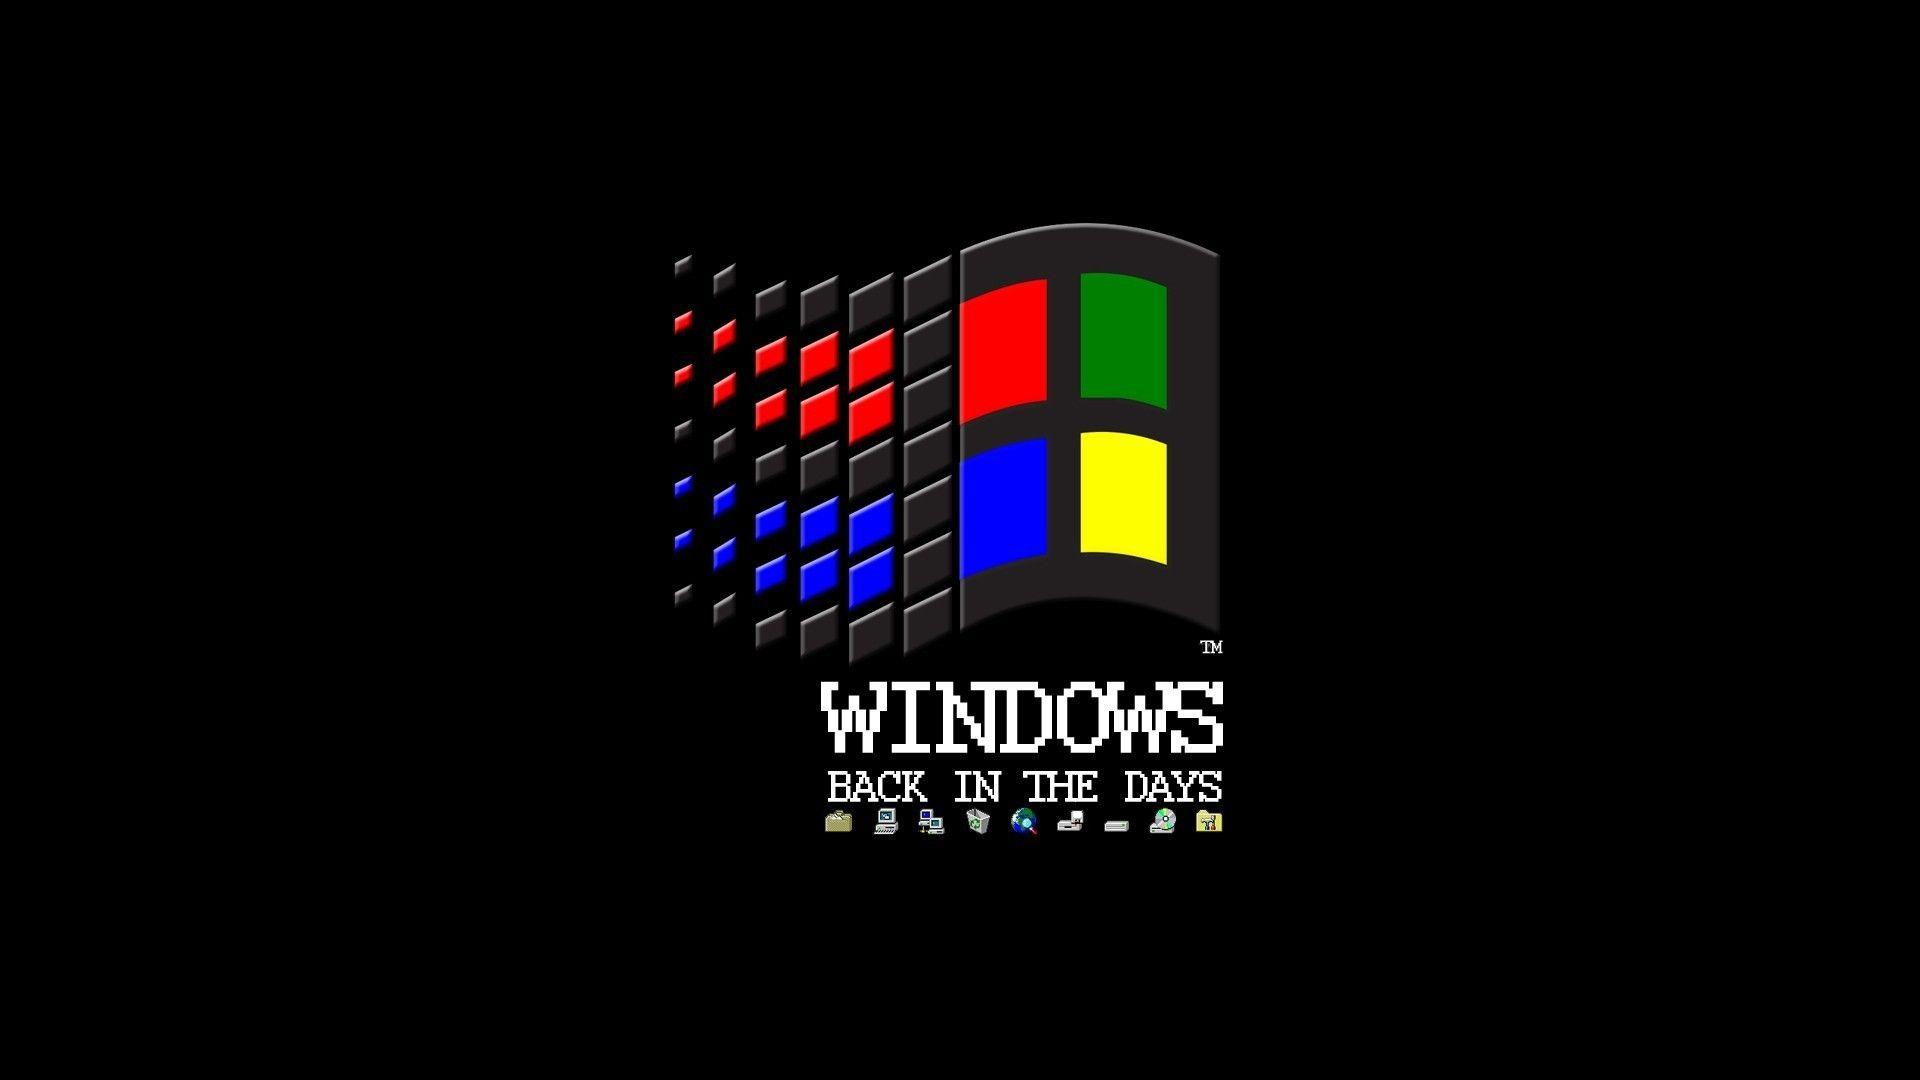 Hình nền Windows 98 màu đen thể hiện sự trang trọng và đẳng cấp của máy tính của bạn. Hãy xem những hình ảnh đầy ấn tượng và đầy màu sắc để tìm kiếm một hình nền màu đen đẹp nhất để làm nền cho máy tính của bạn.